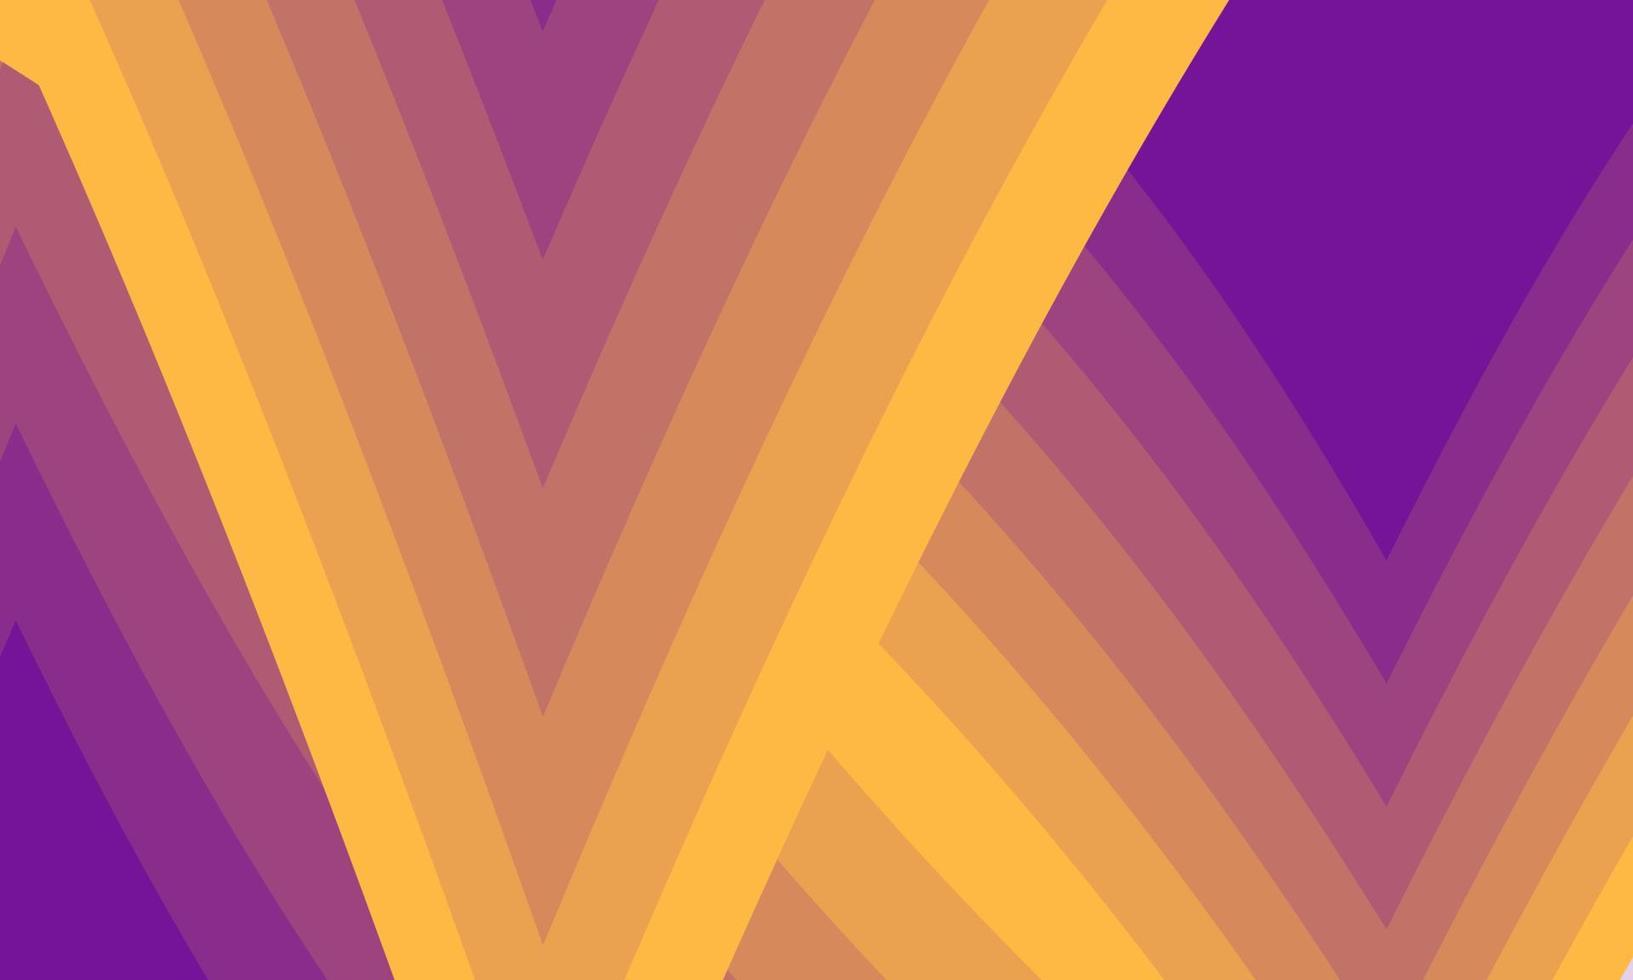 fondo colorido abstracto con rayas. Resumen moderno fondo de líneas amarillas y púrpuras ilustración vectorial EPS10 vector